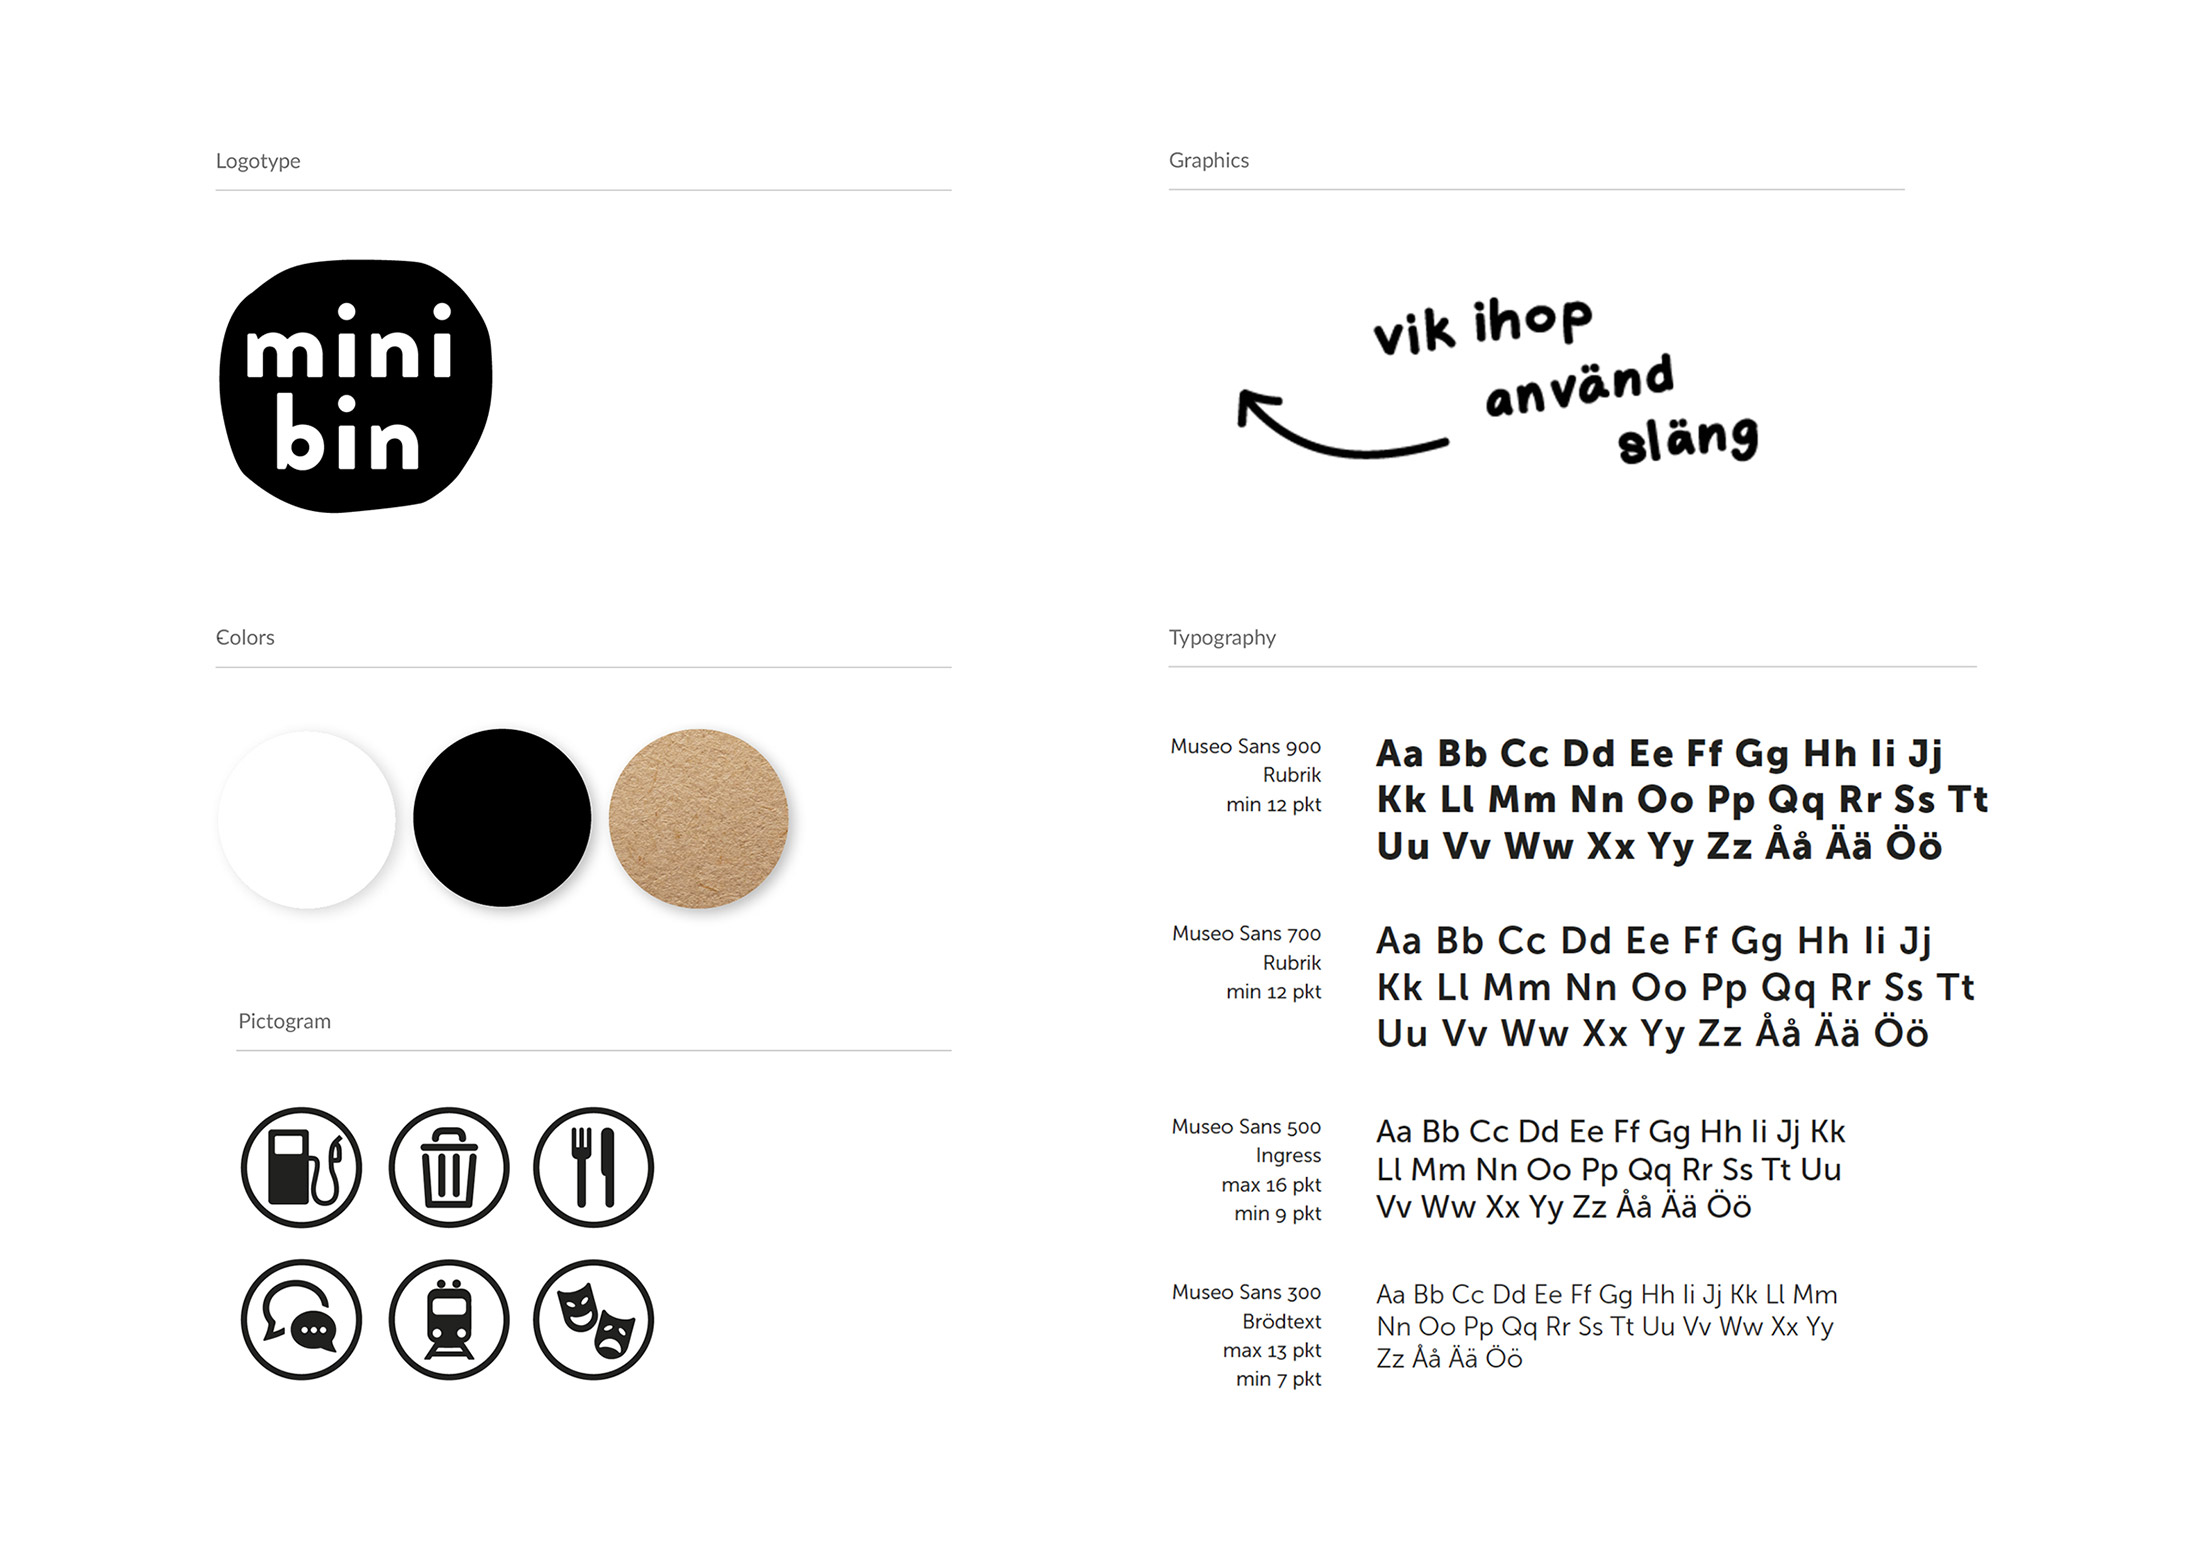 Minibin graphic manual